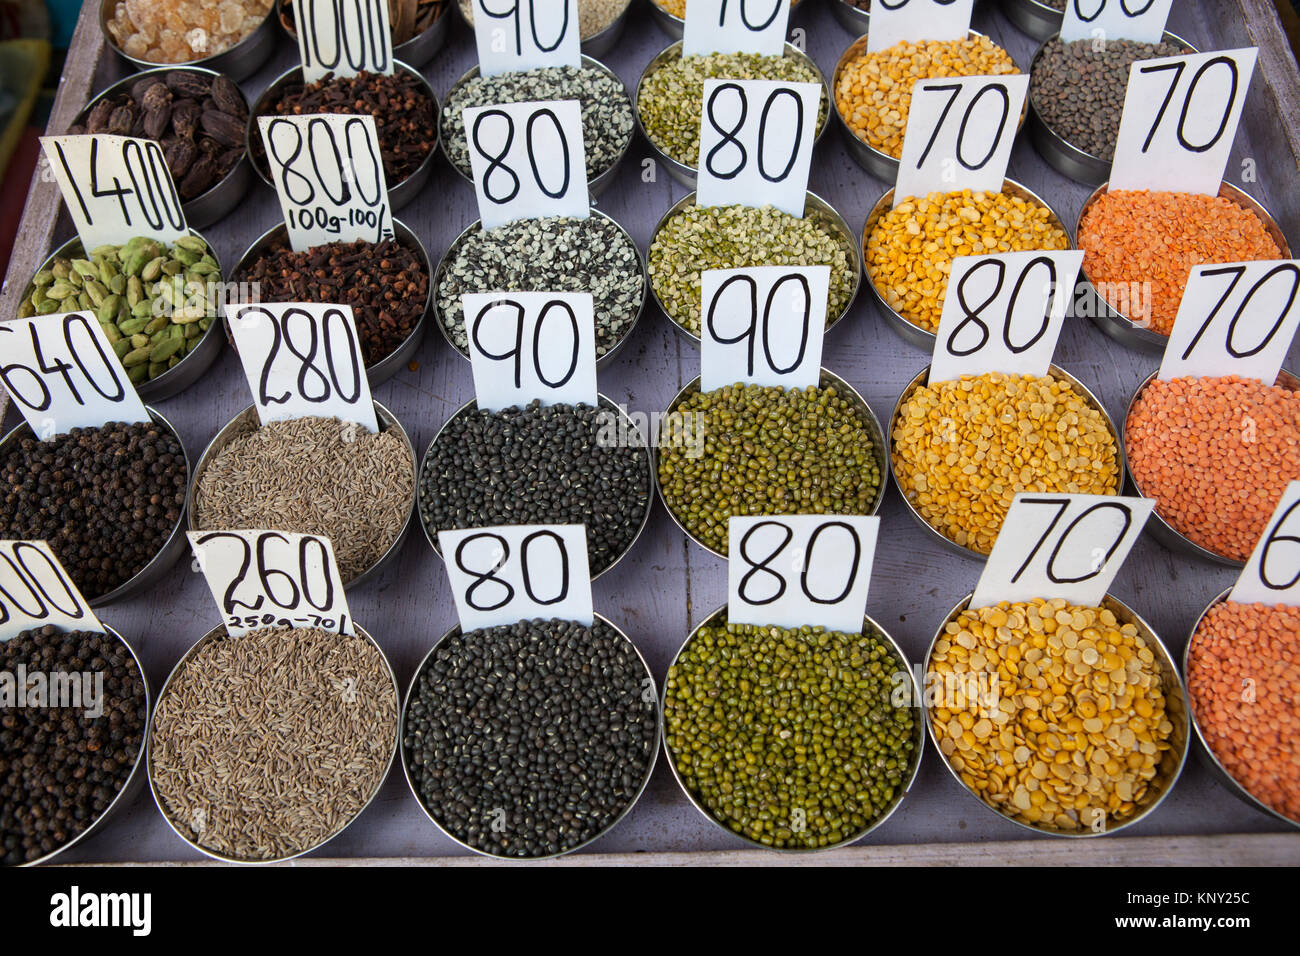 Visualizzazione di lenticchie e impulsi nel mercato delle spezie nella città vecchia di Delhi, India Foto Stock